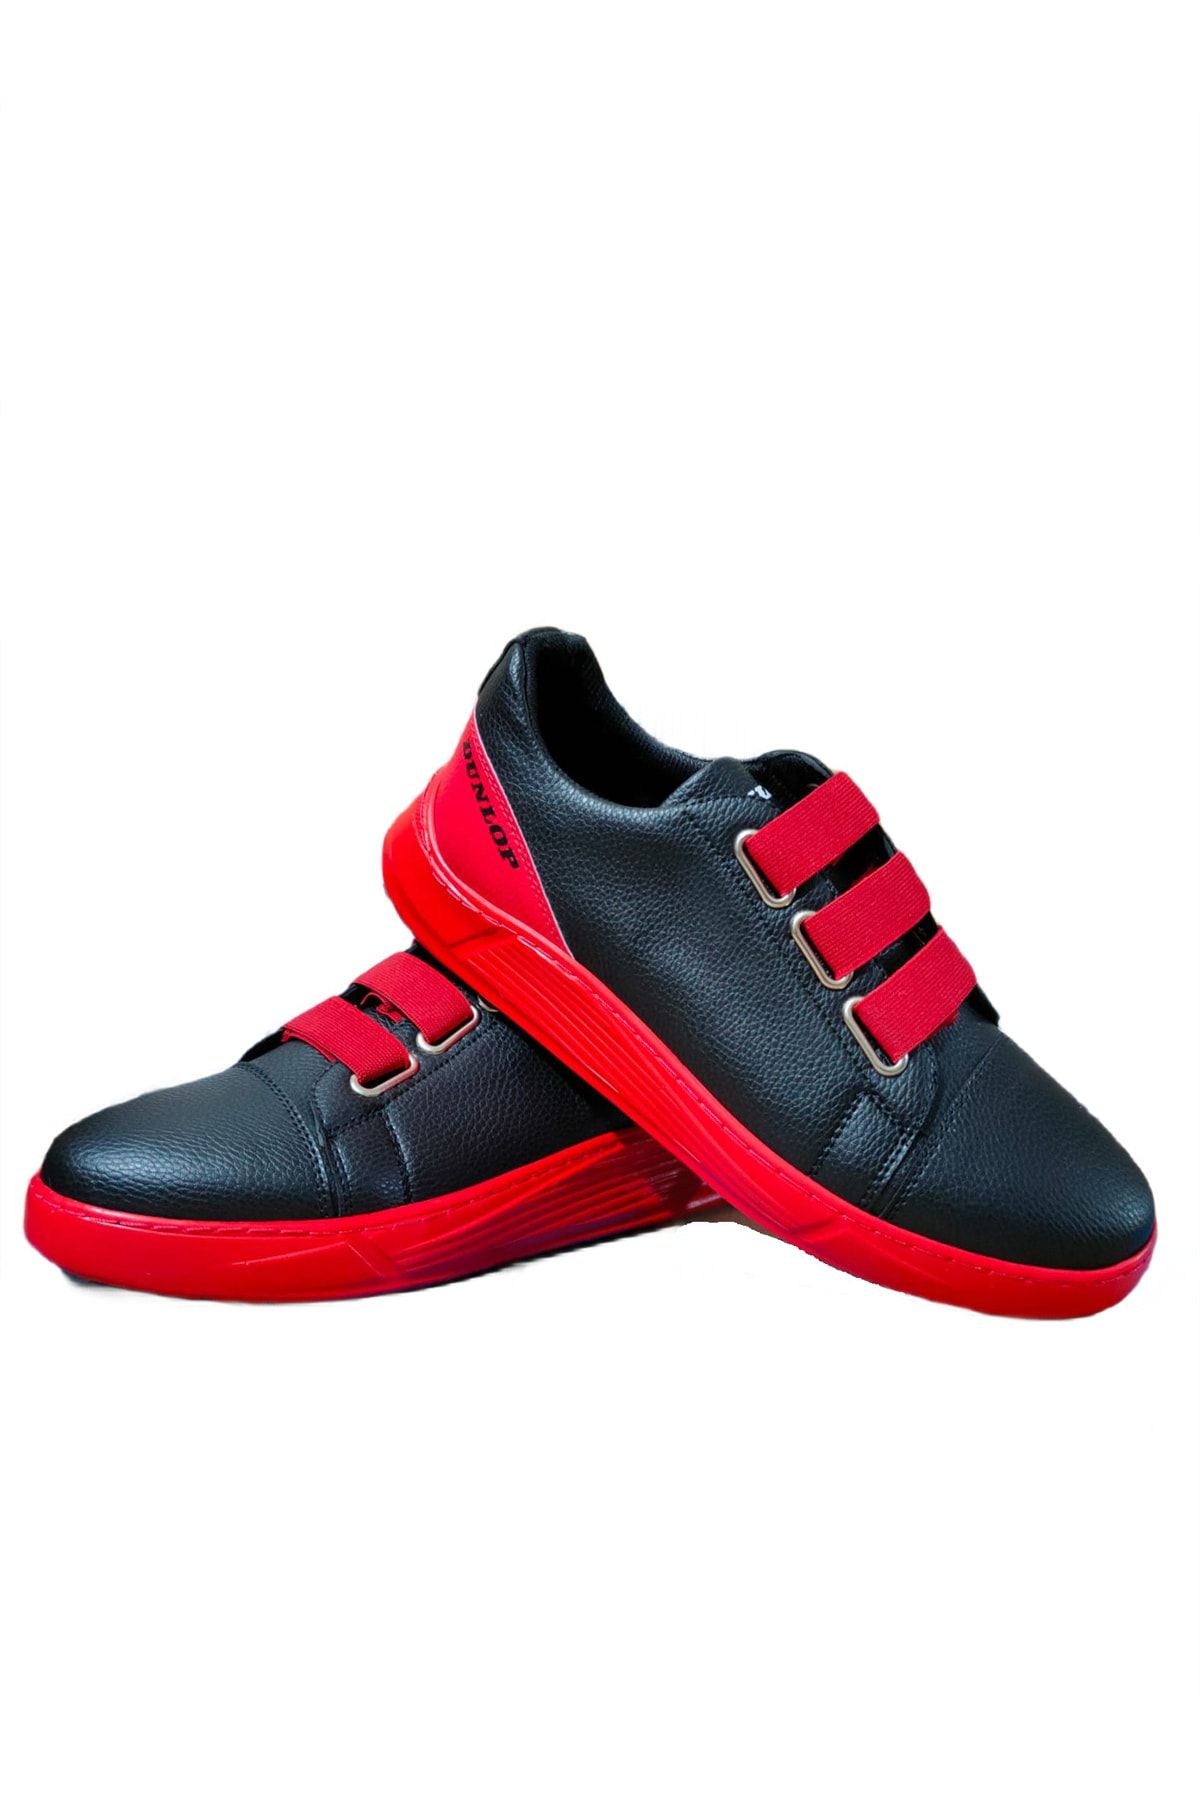 Dunlop 1207 Erkek Sneaker Günlük Spor Ayakkabı Siyah Kırmızı